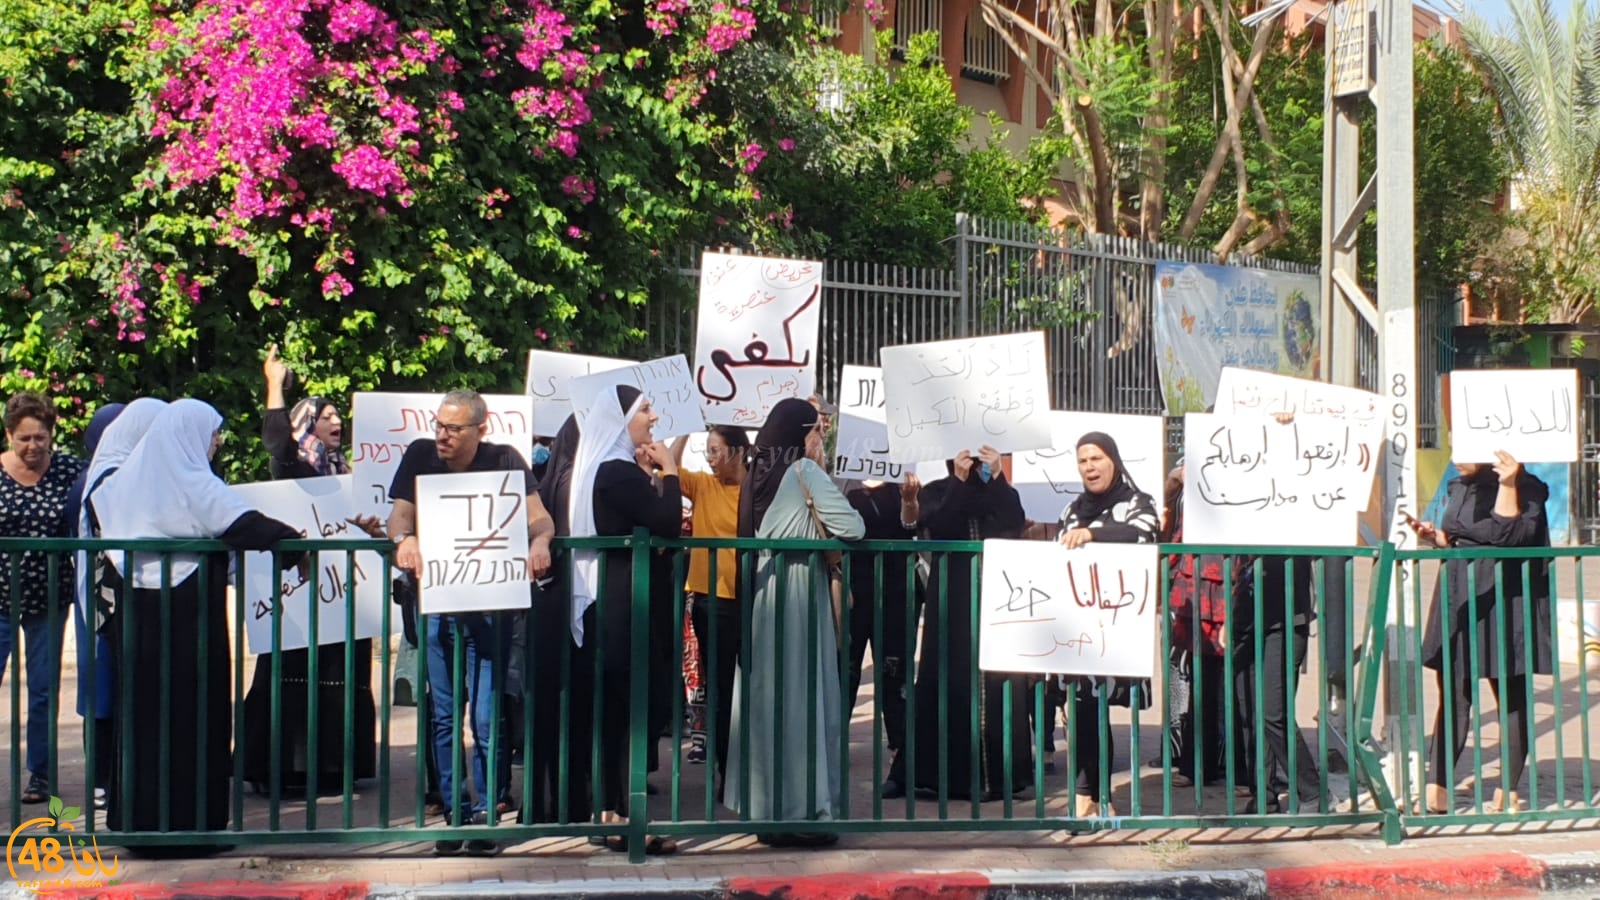 اللد: عربدات المستوطنين وتظاهرة بالرازي رفضاً لمظاهر حمل السلاح بالمدينة